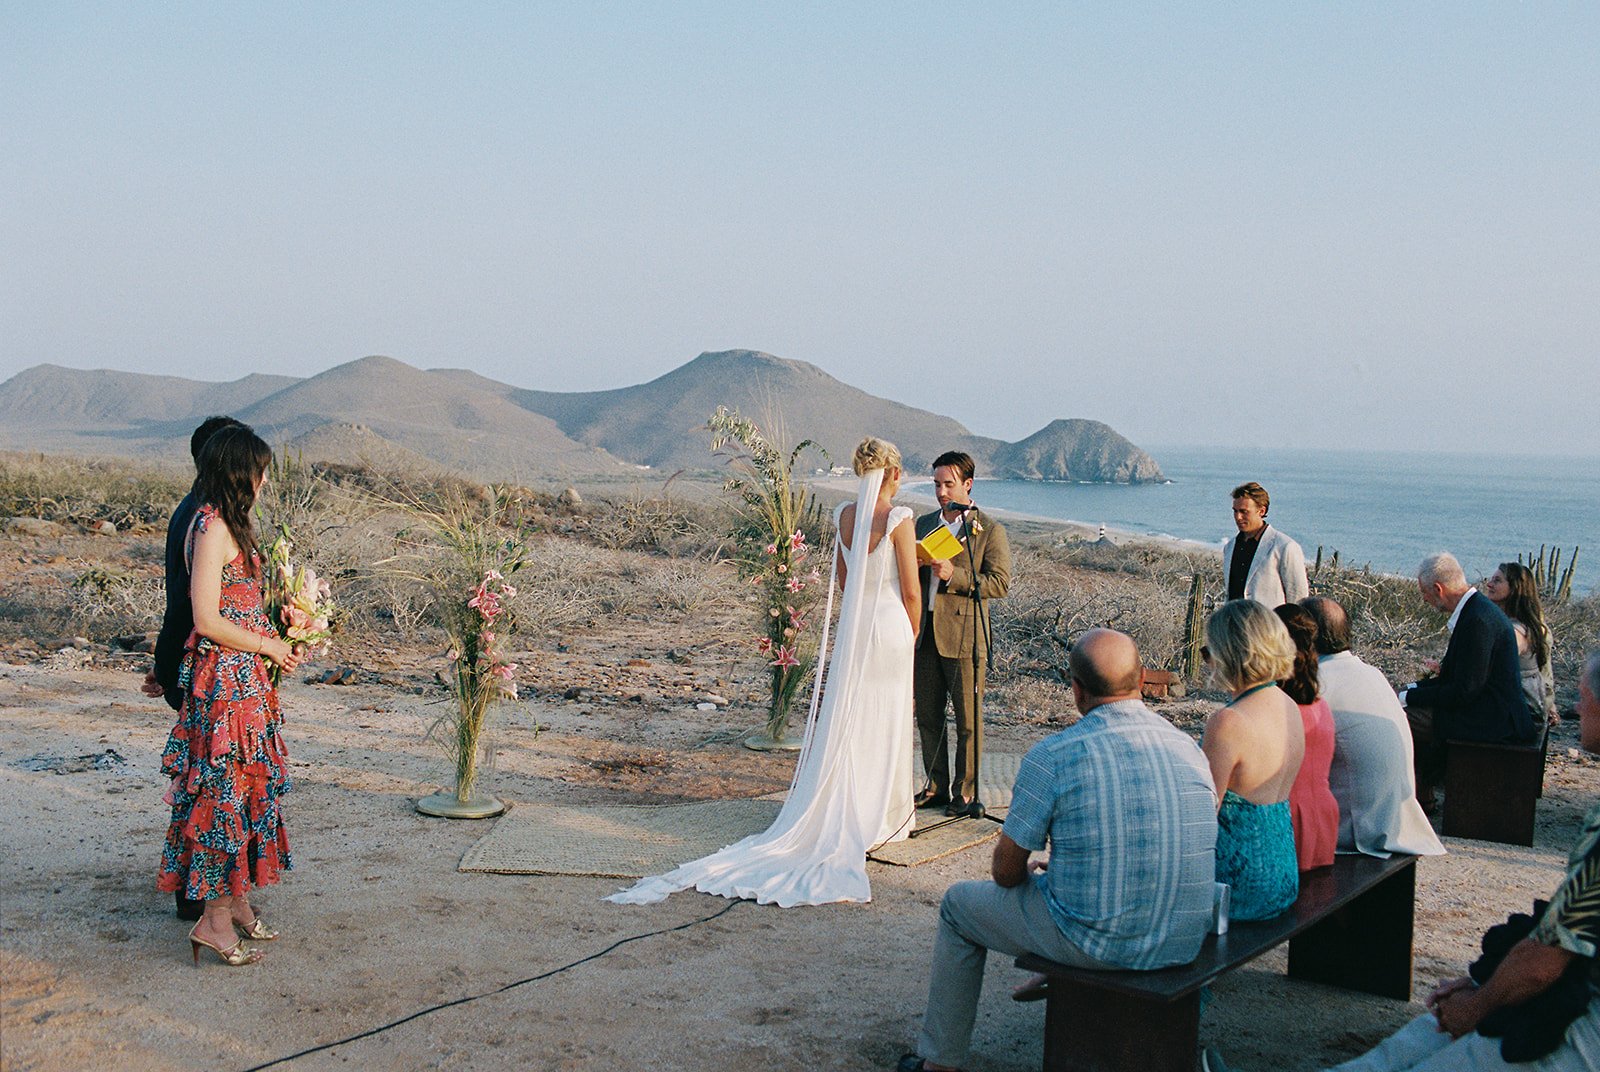 Best-Todos-Santos-Wedding-Photographer-Baja-El Mirador-La Bohemia-35mm-Film-Austin-Mexico-129.jpg